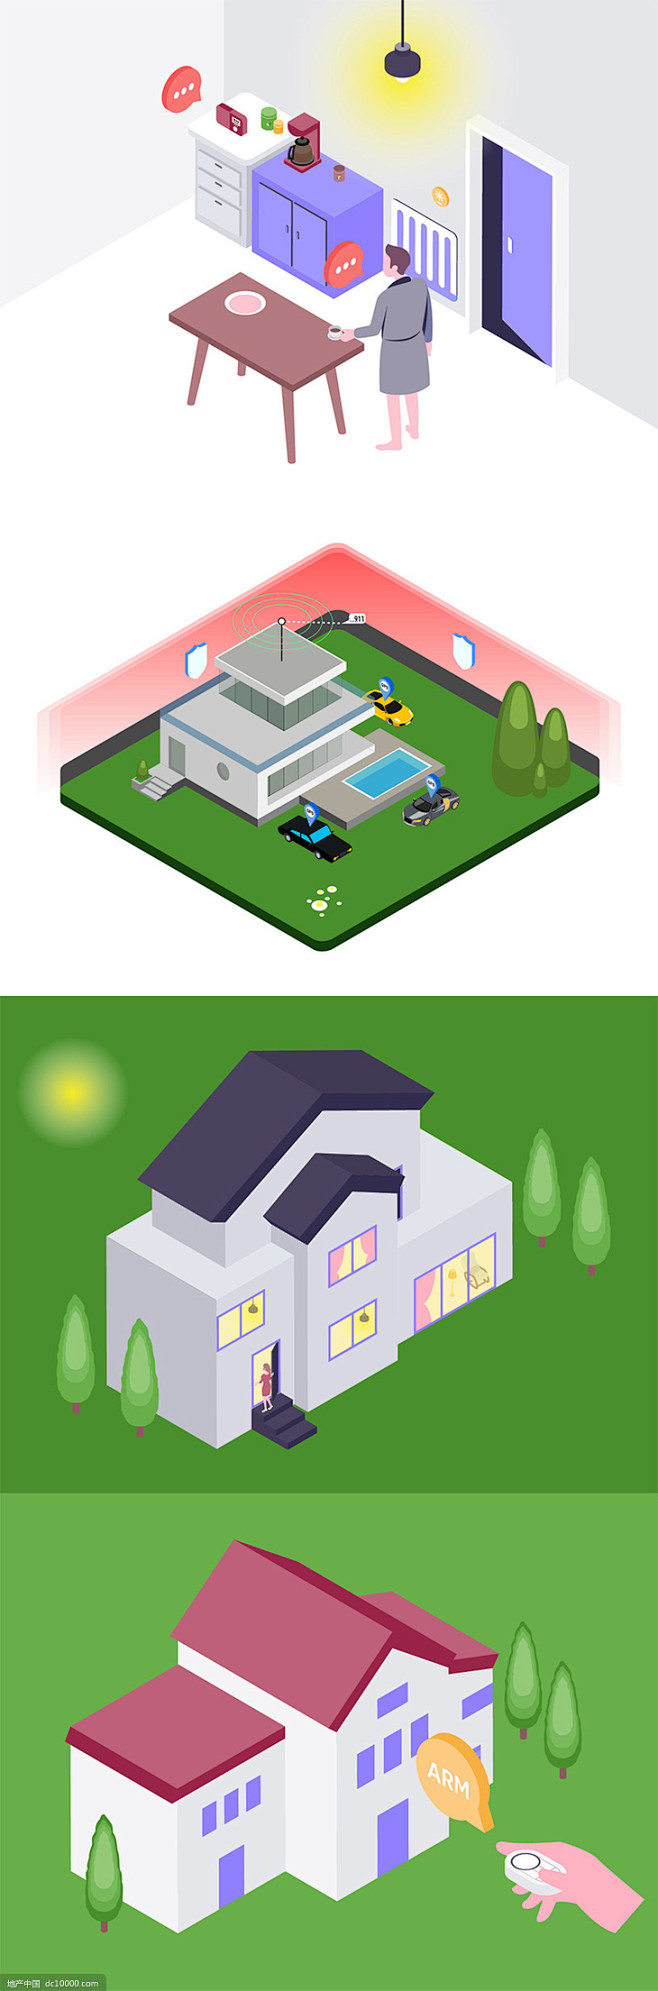 2.5D房屋建筑模型智能家居创意场景插画...